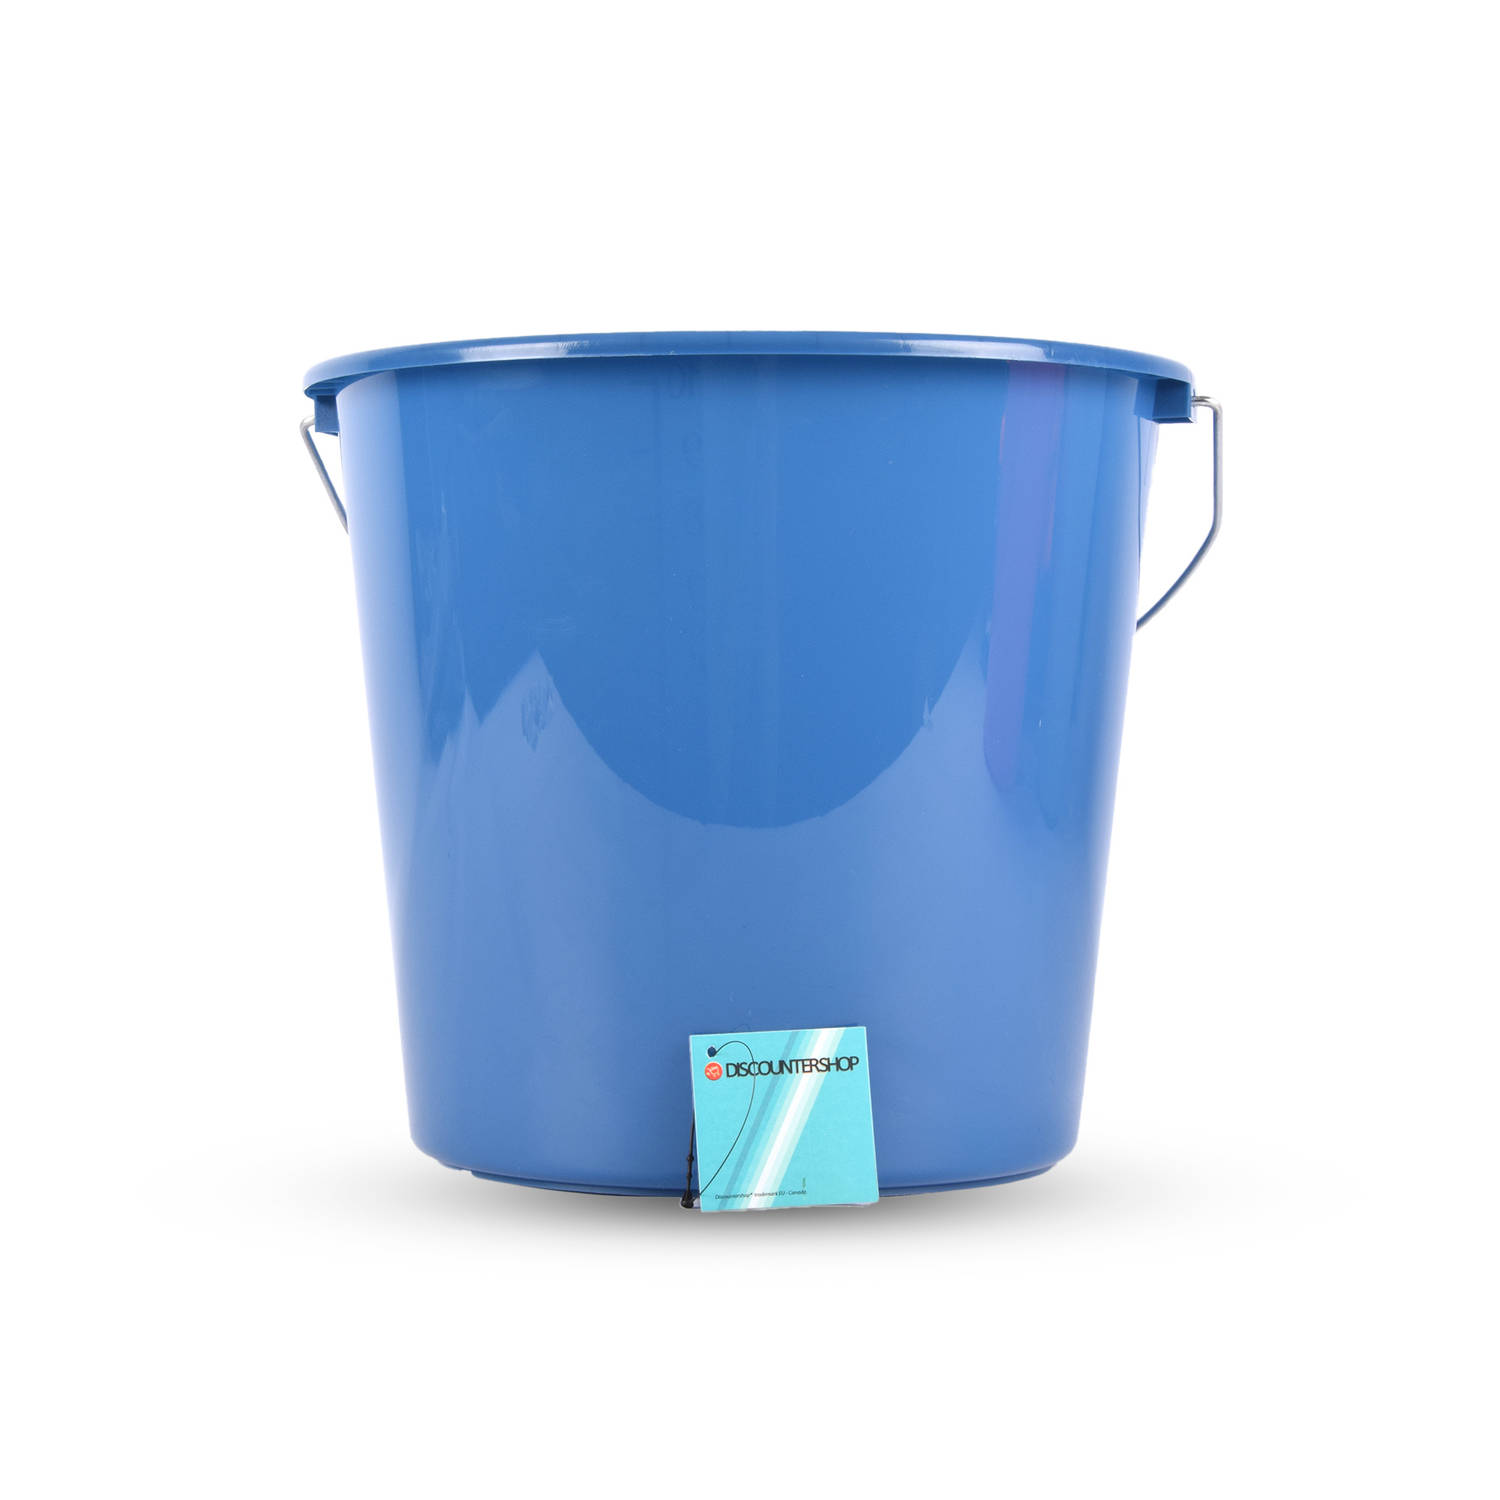 Handige 10 Liter Blauwe Plastic Emmer met Handgreep - 28cm x 28cm x 25cm - Onmisbaar Wasemmer voor Huishouden en Klussen